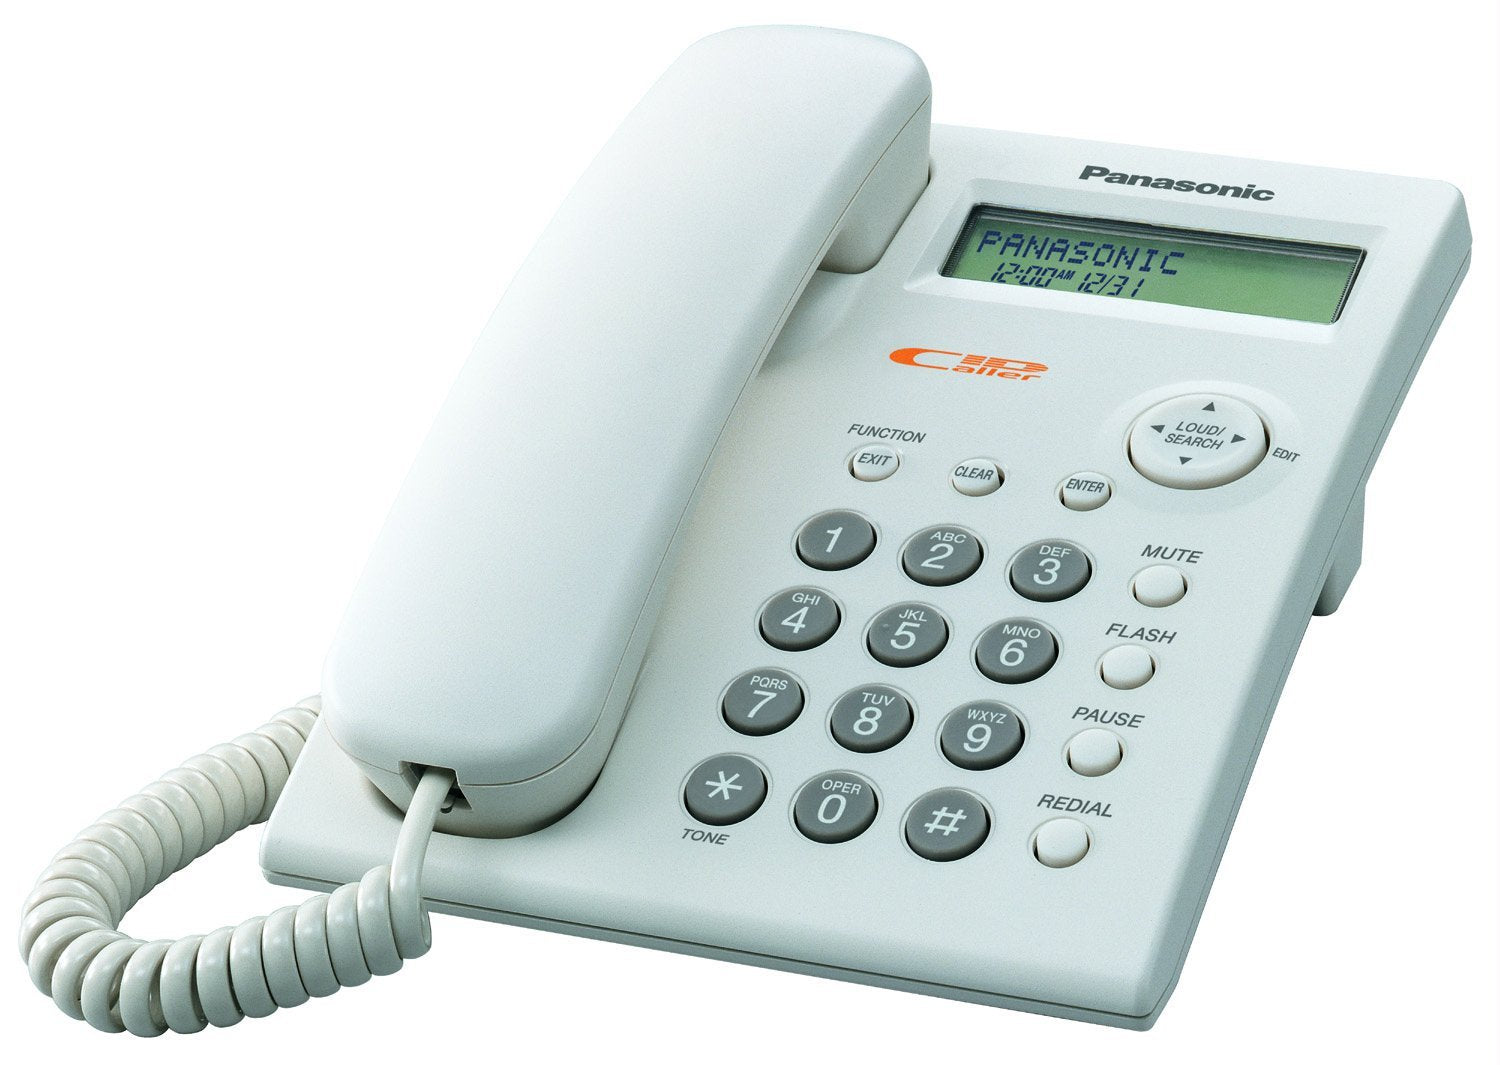 Panasonic KX-TSC11 Corded Phone with CallerID - White